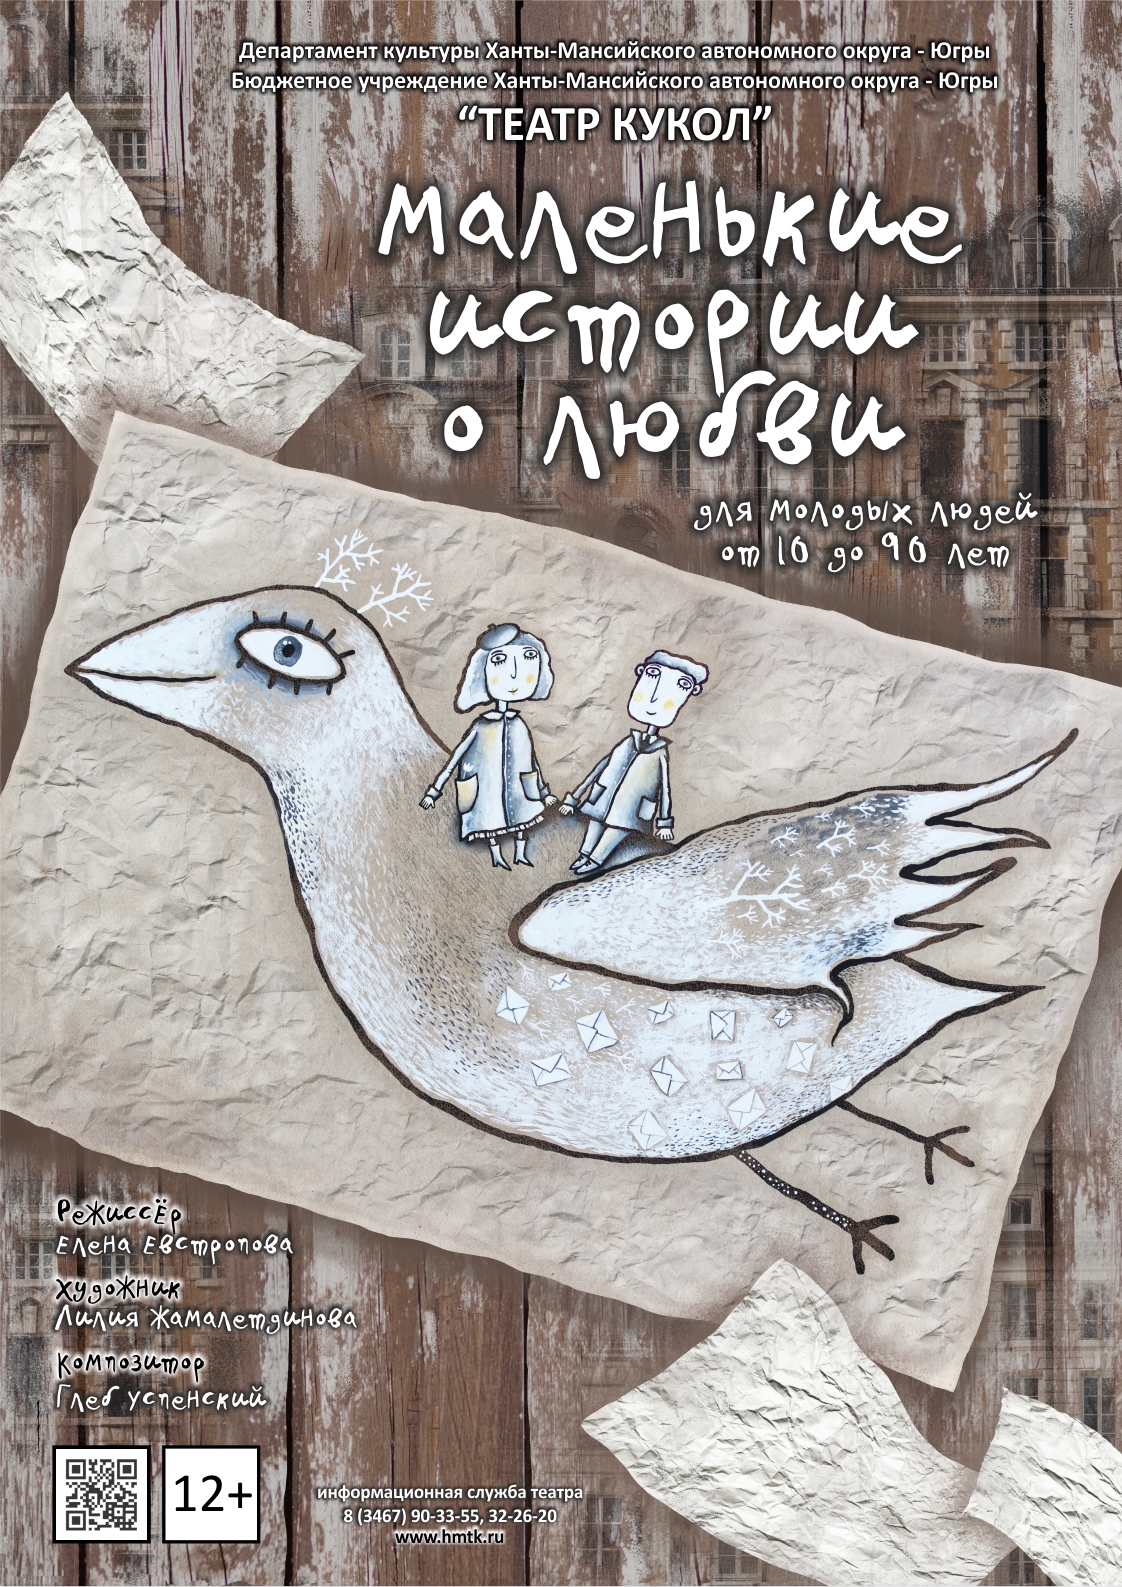 Взрослый кукольный спектакль покажут в театре кукол Ханты-Мансийска